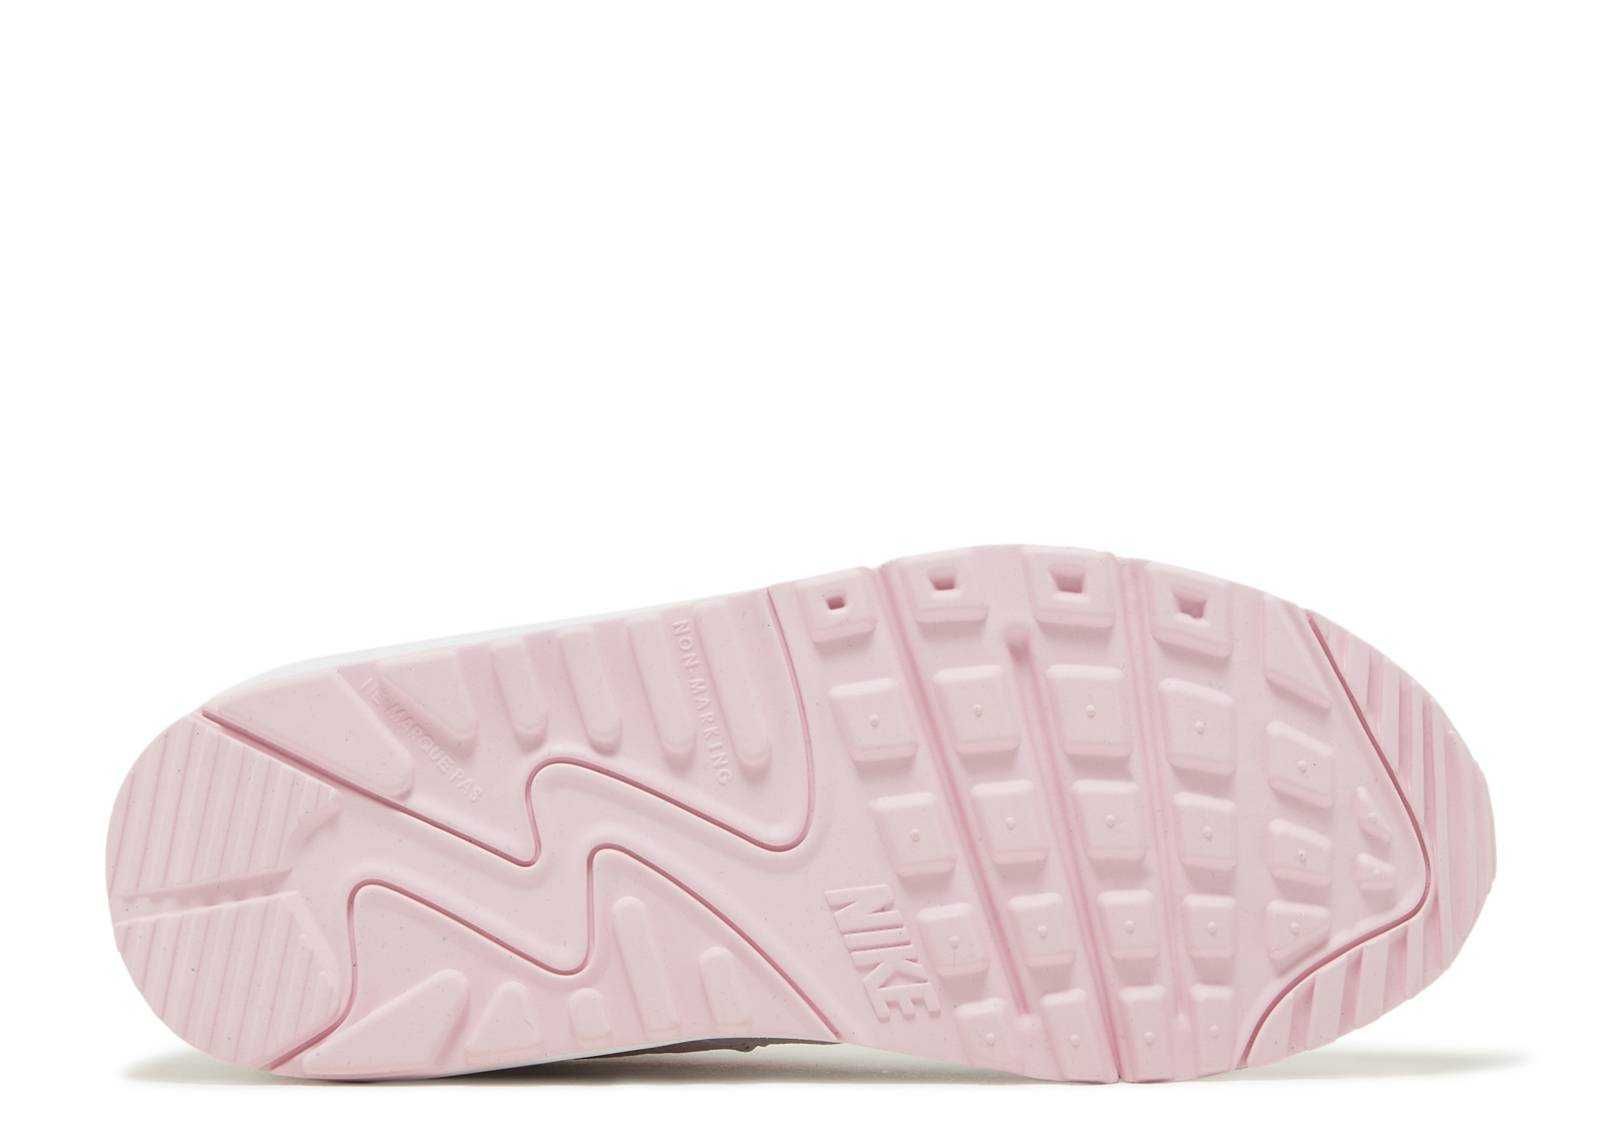 Adidasi Originali 100 % Nike Air Max 90 LTR White Pink Foam nr 36.5